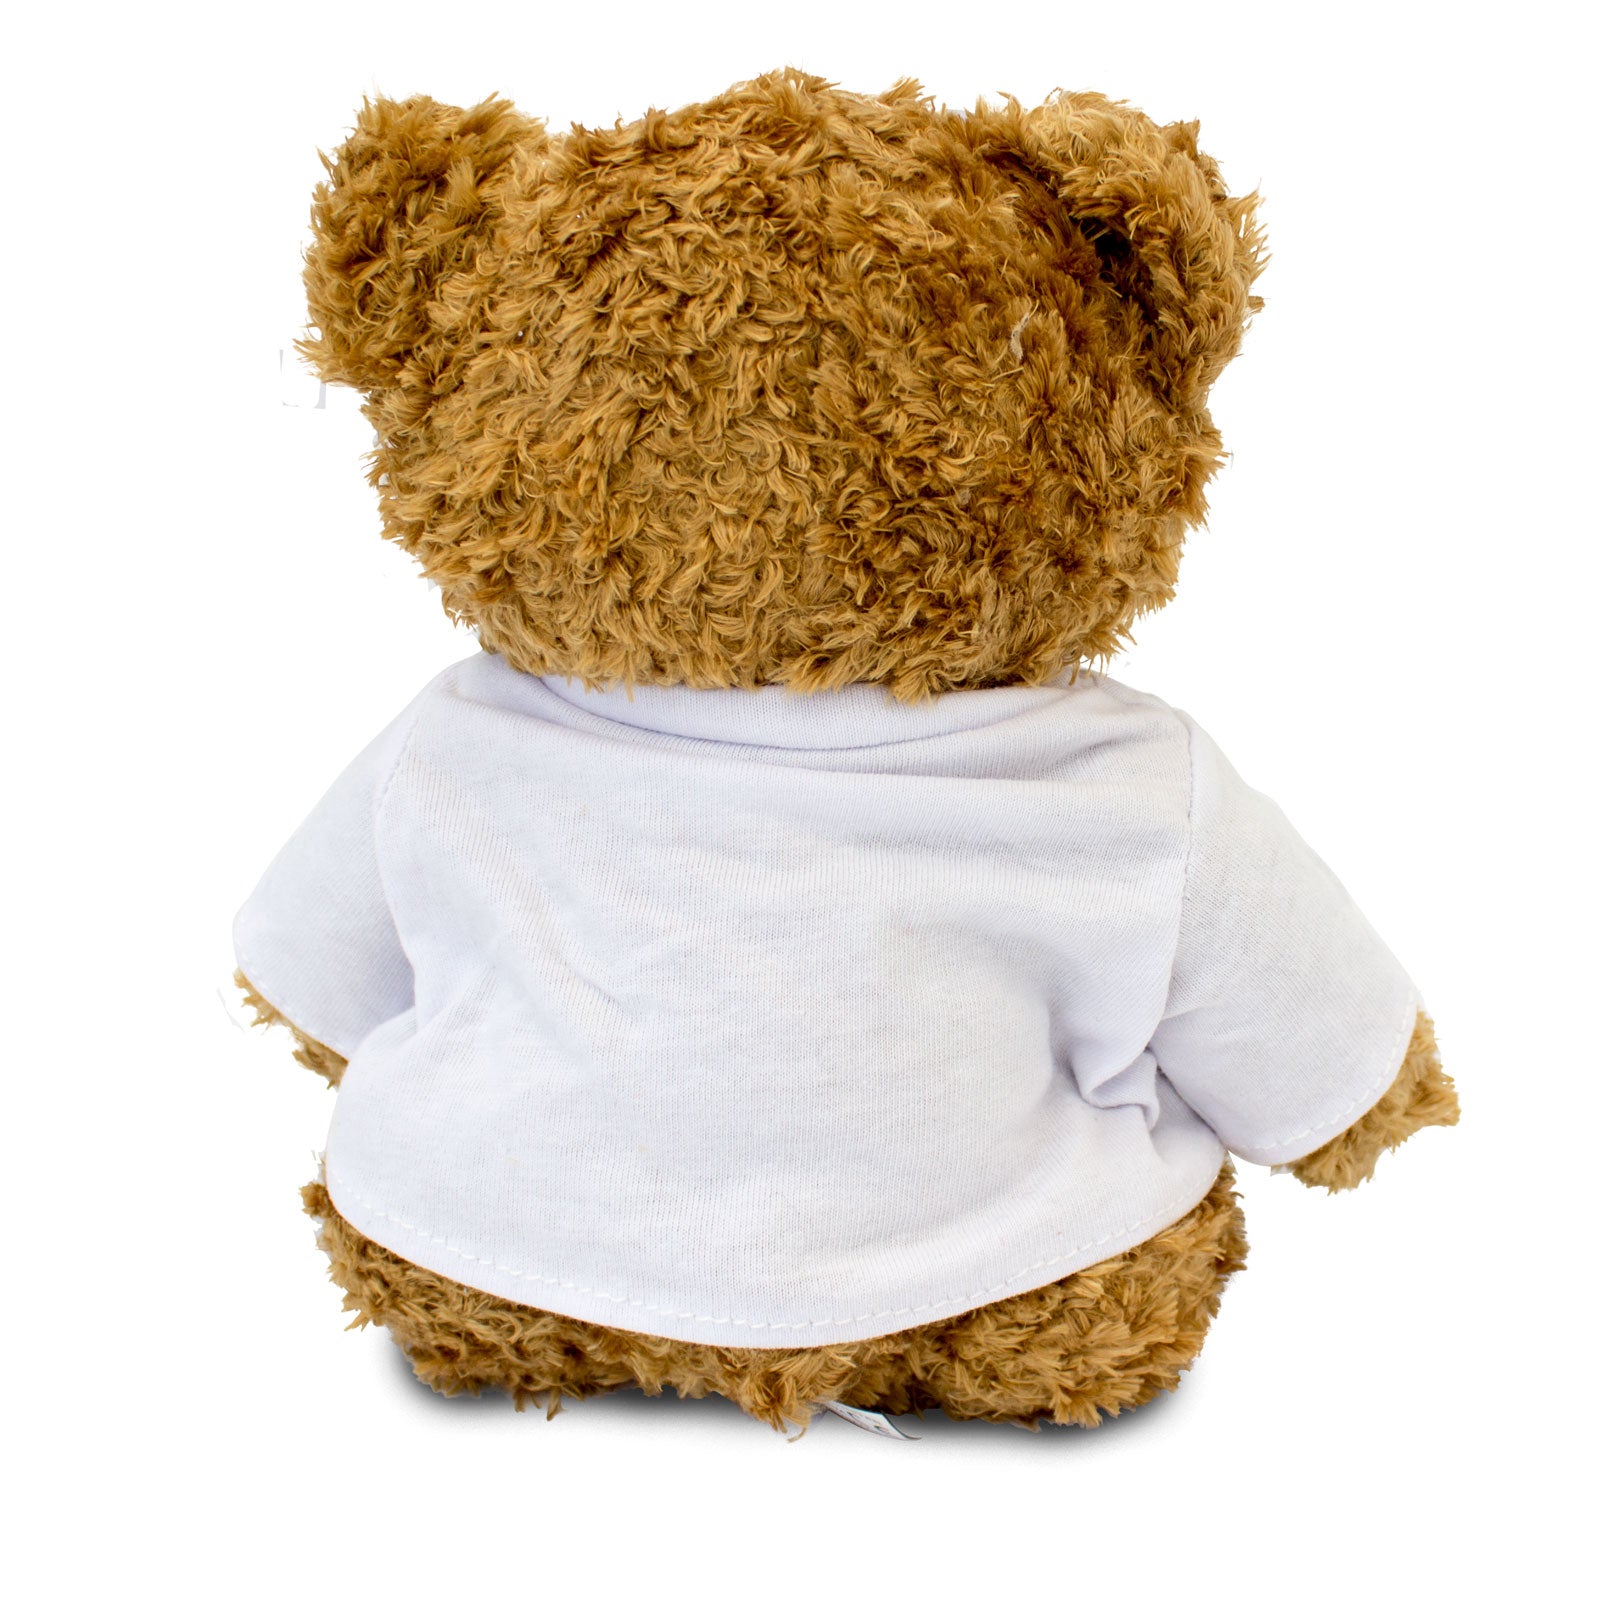 Get Well Soon Alica - Teddy Bear